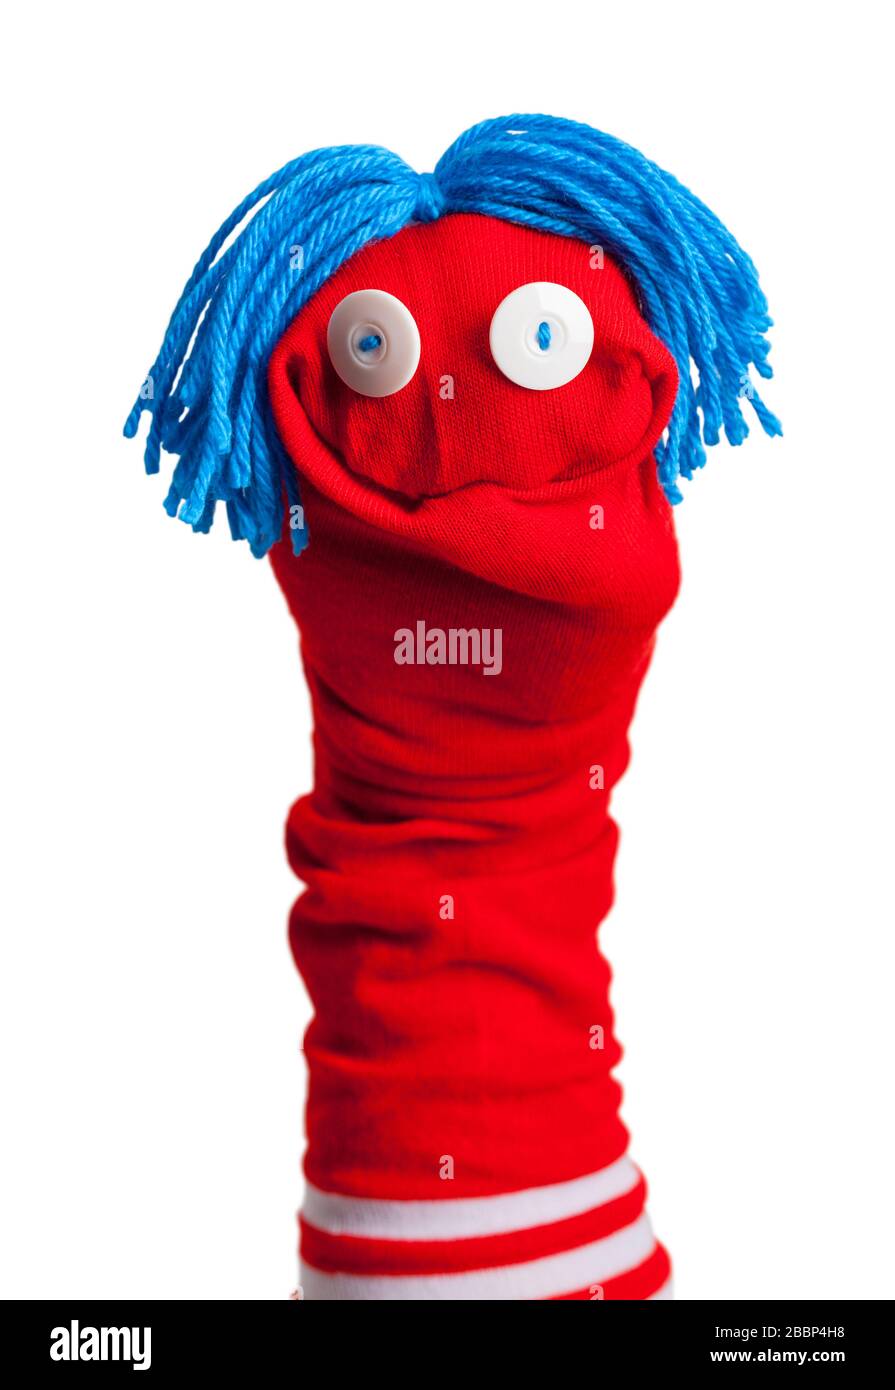 Sock puppet immagini e fotografie stock ad alta risoluzione - Alamy